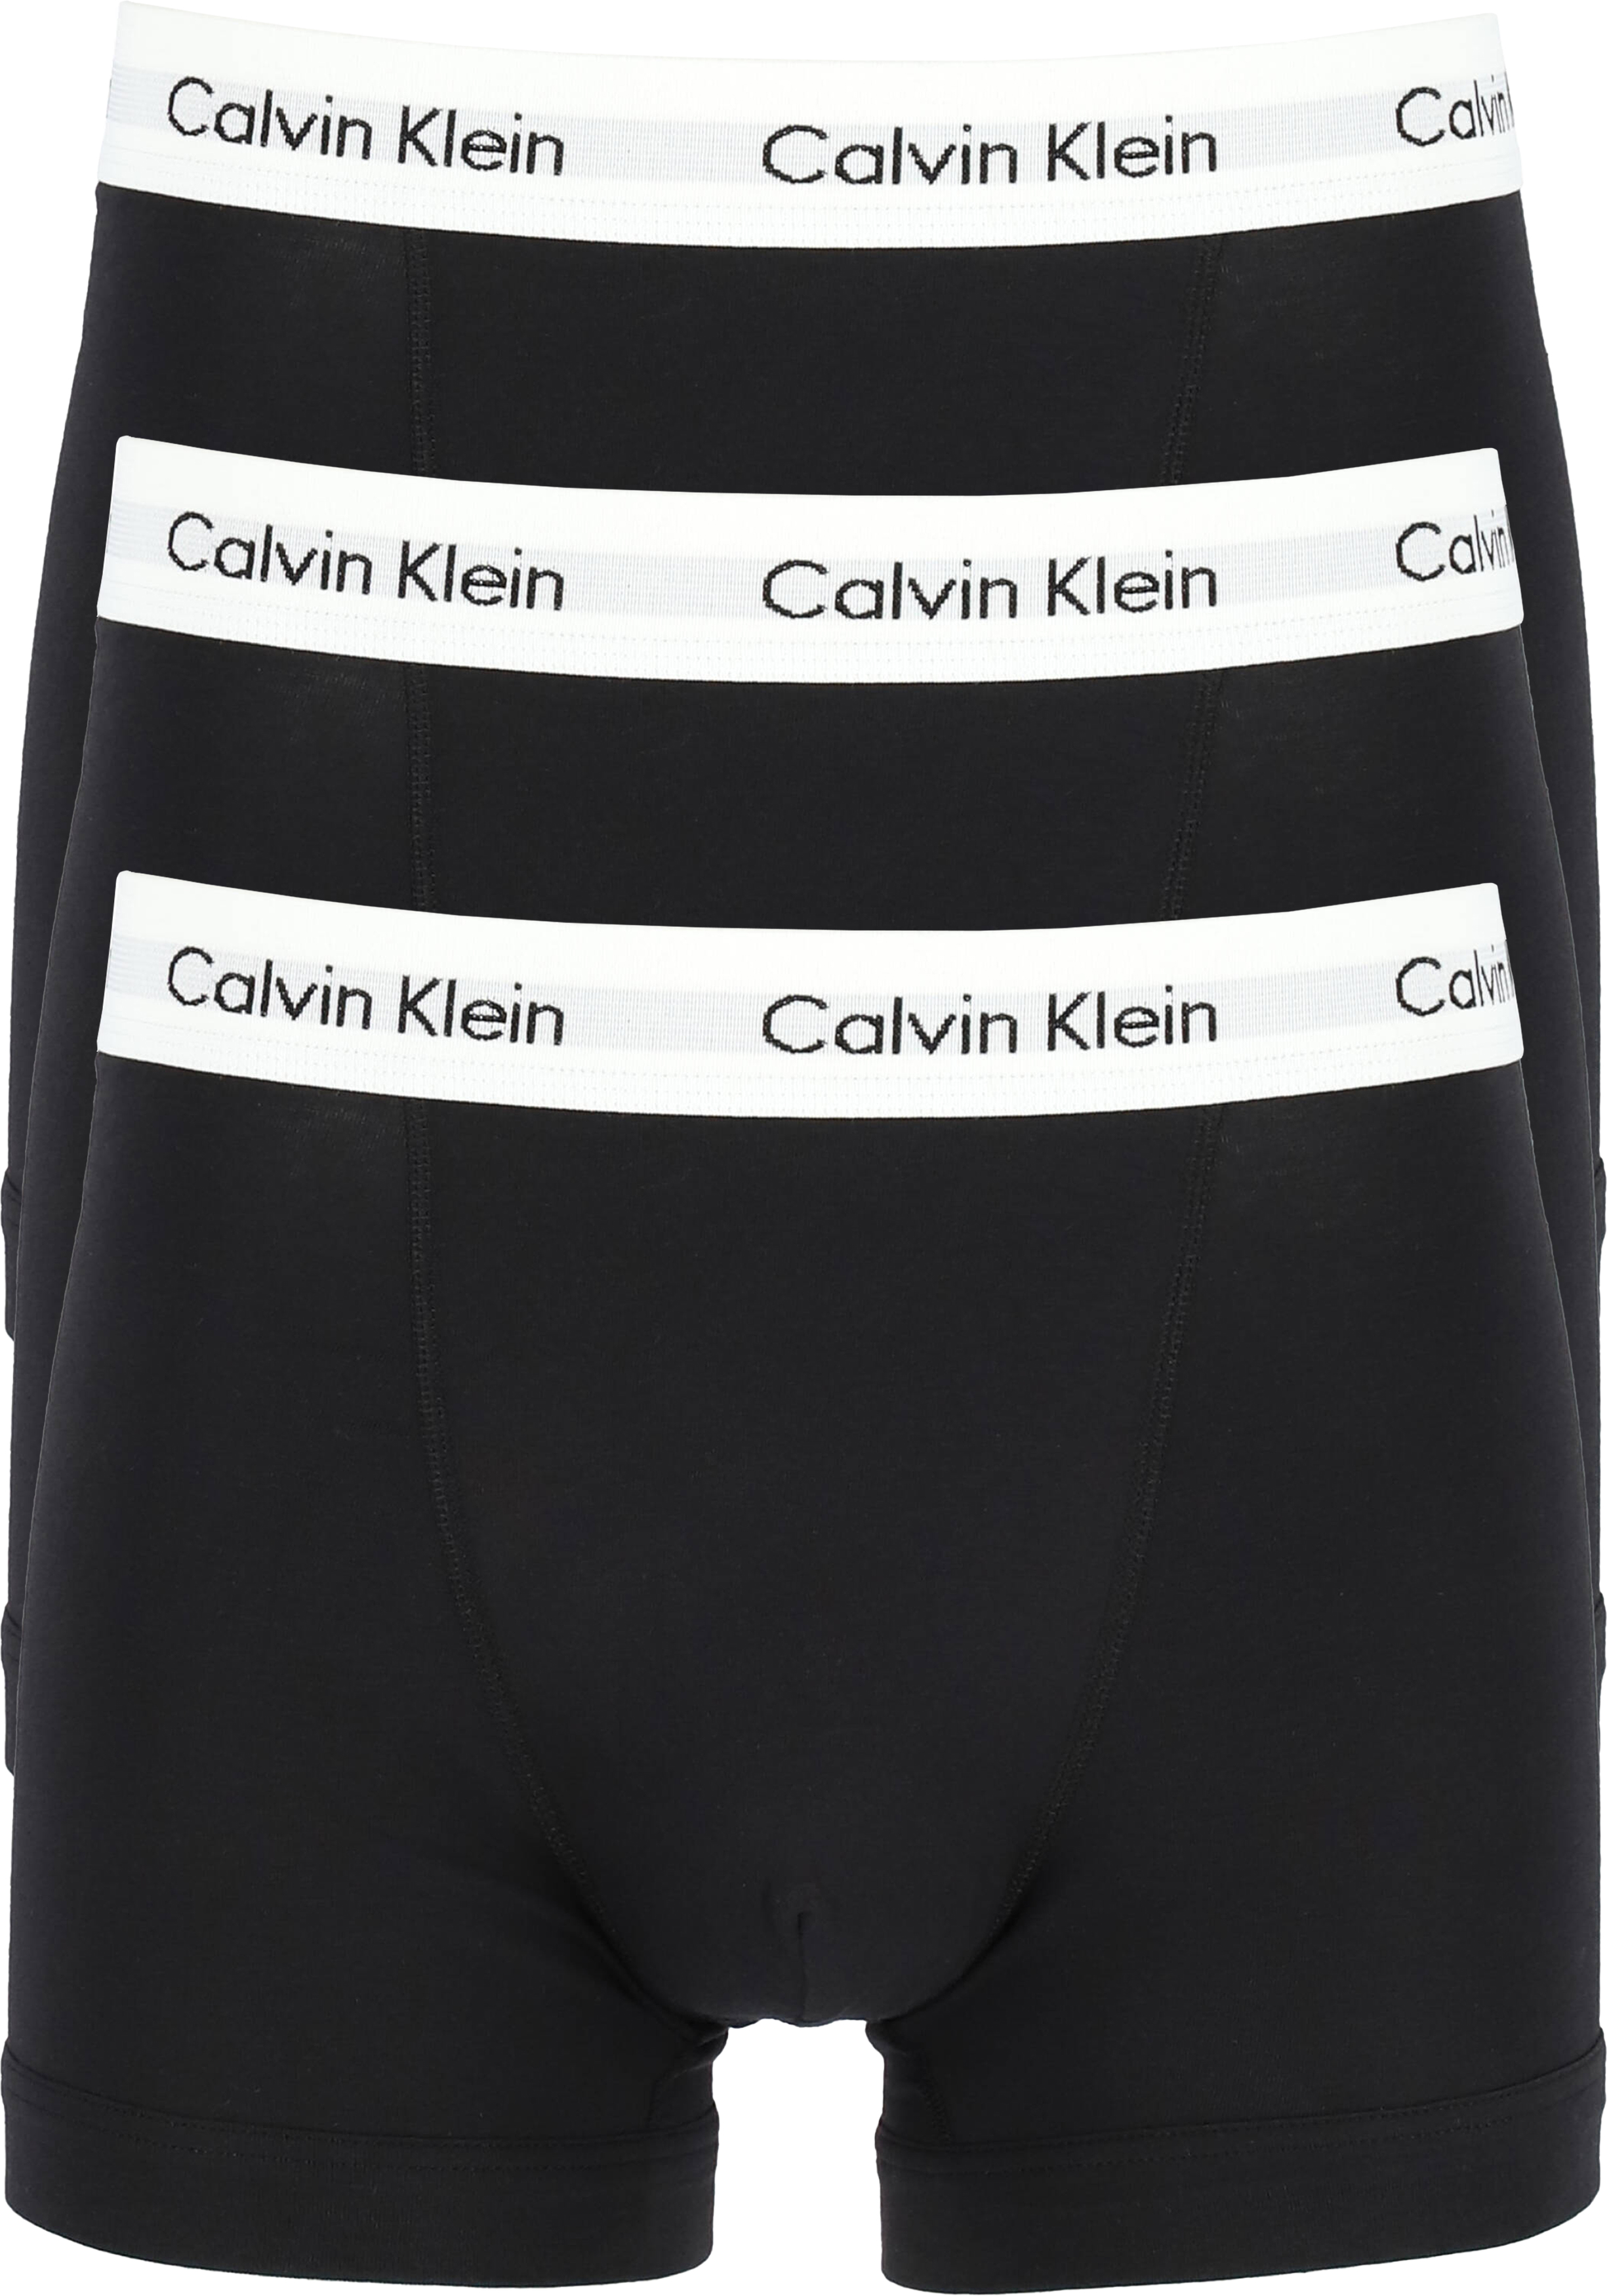 Uitstekend aantrekkelijk handleiding Calvin Klein Trunks (3-pack), zwart - Gratis bezorgd